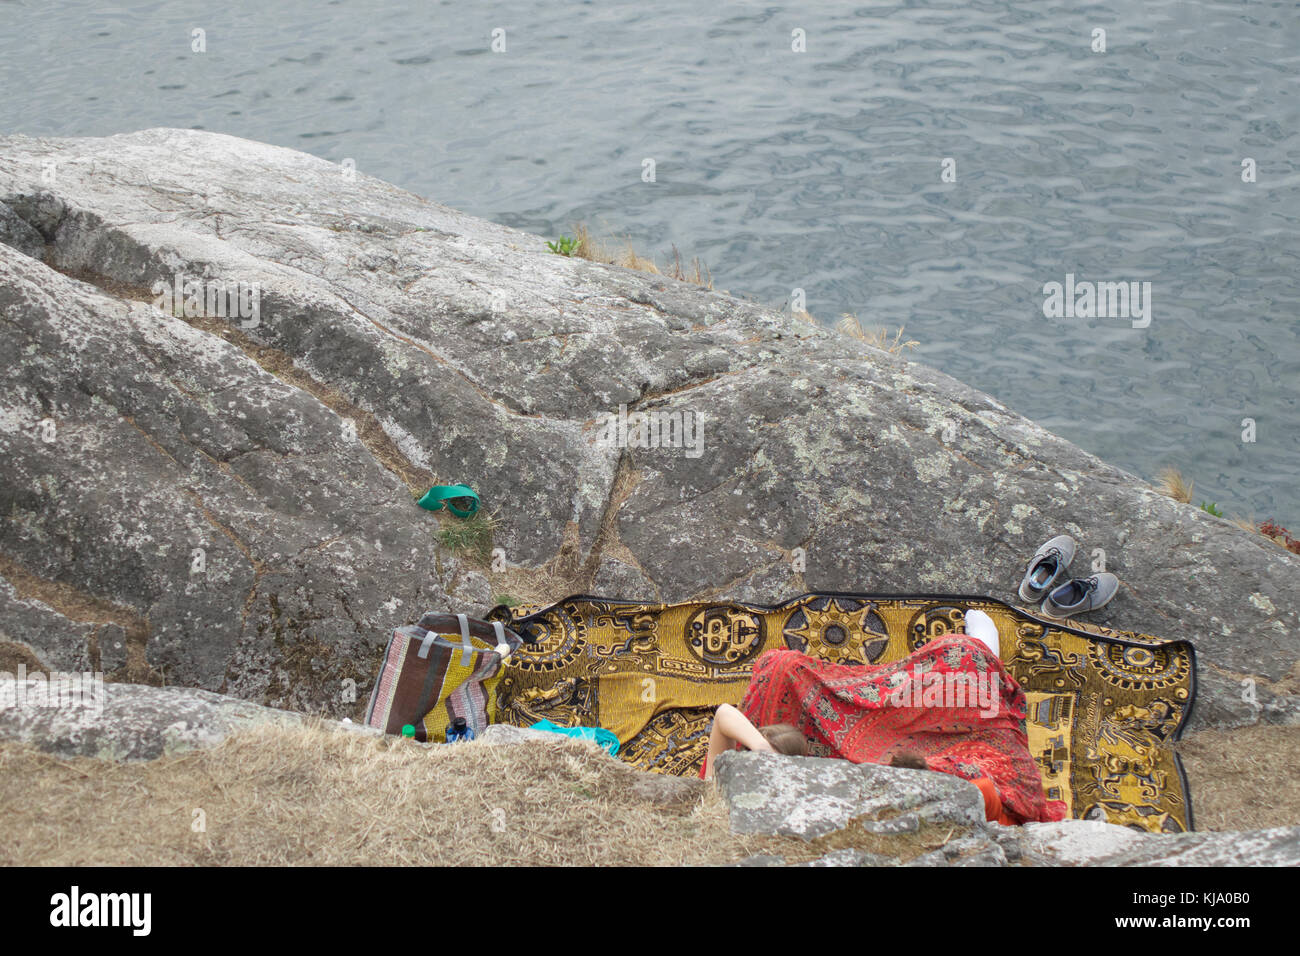 Auf der Suche bei seitlichem 2 unrecognizable Menschen auf eine bunt gemusterte Decke auf einem Felsen mit Blick auf das Wasser unten sitzt. Stockfoto